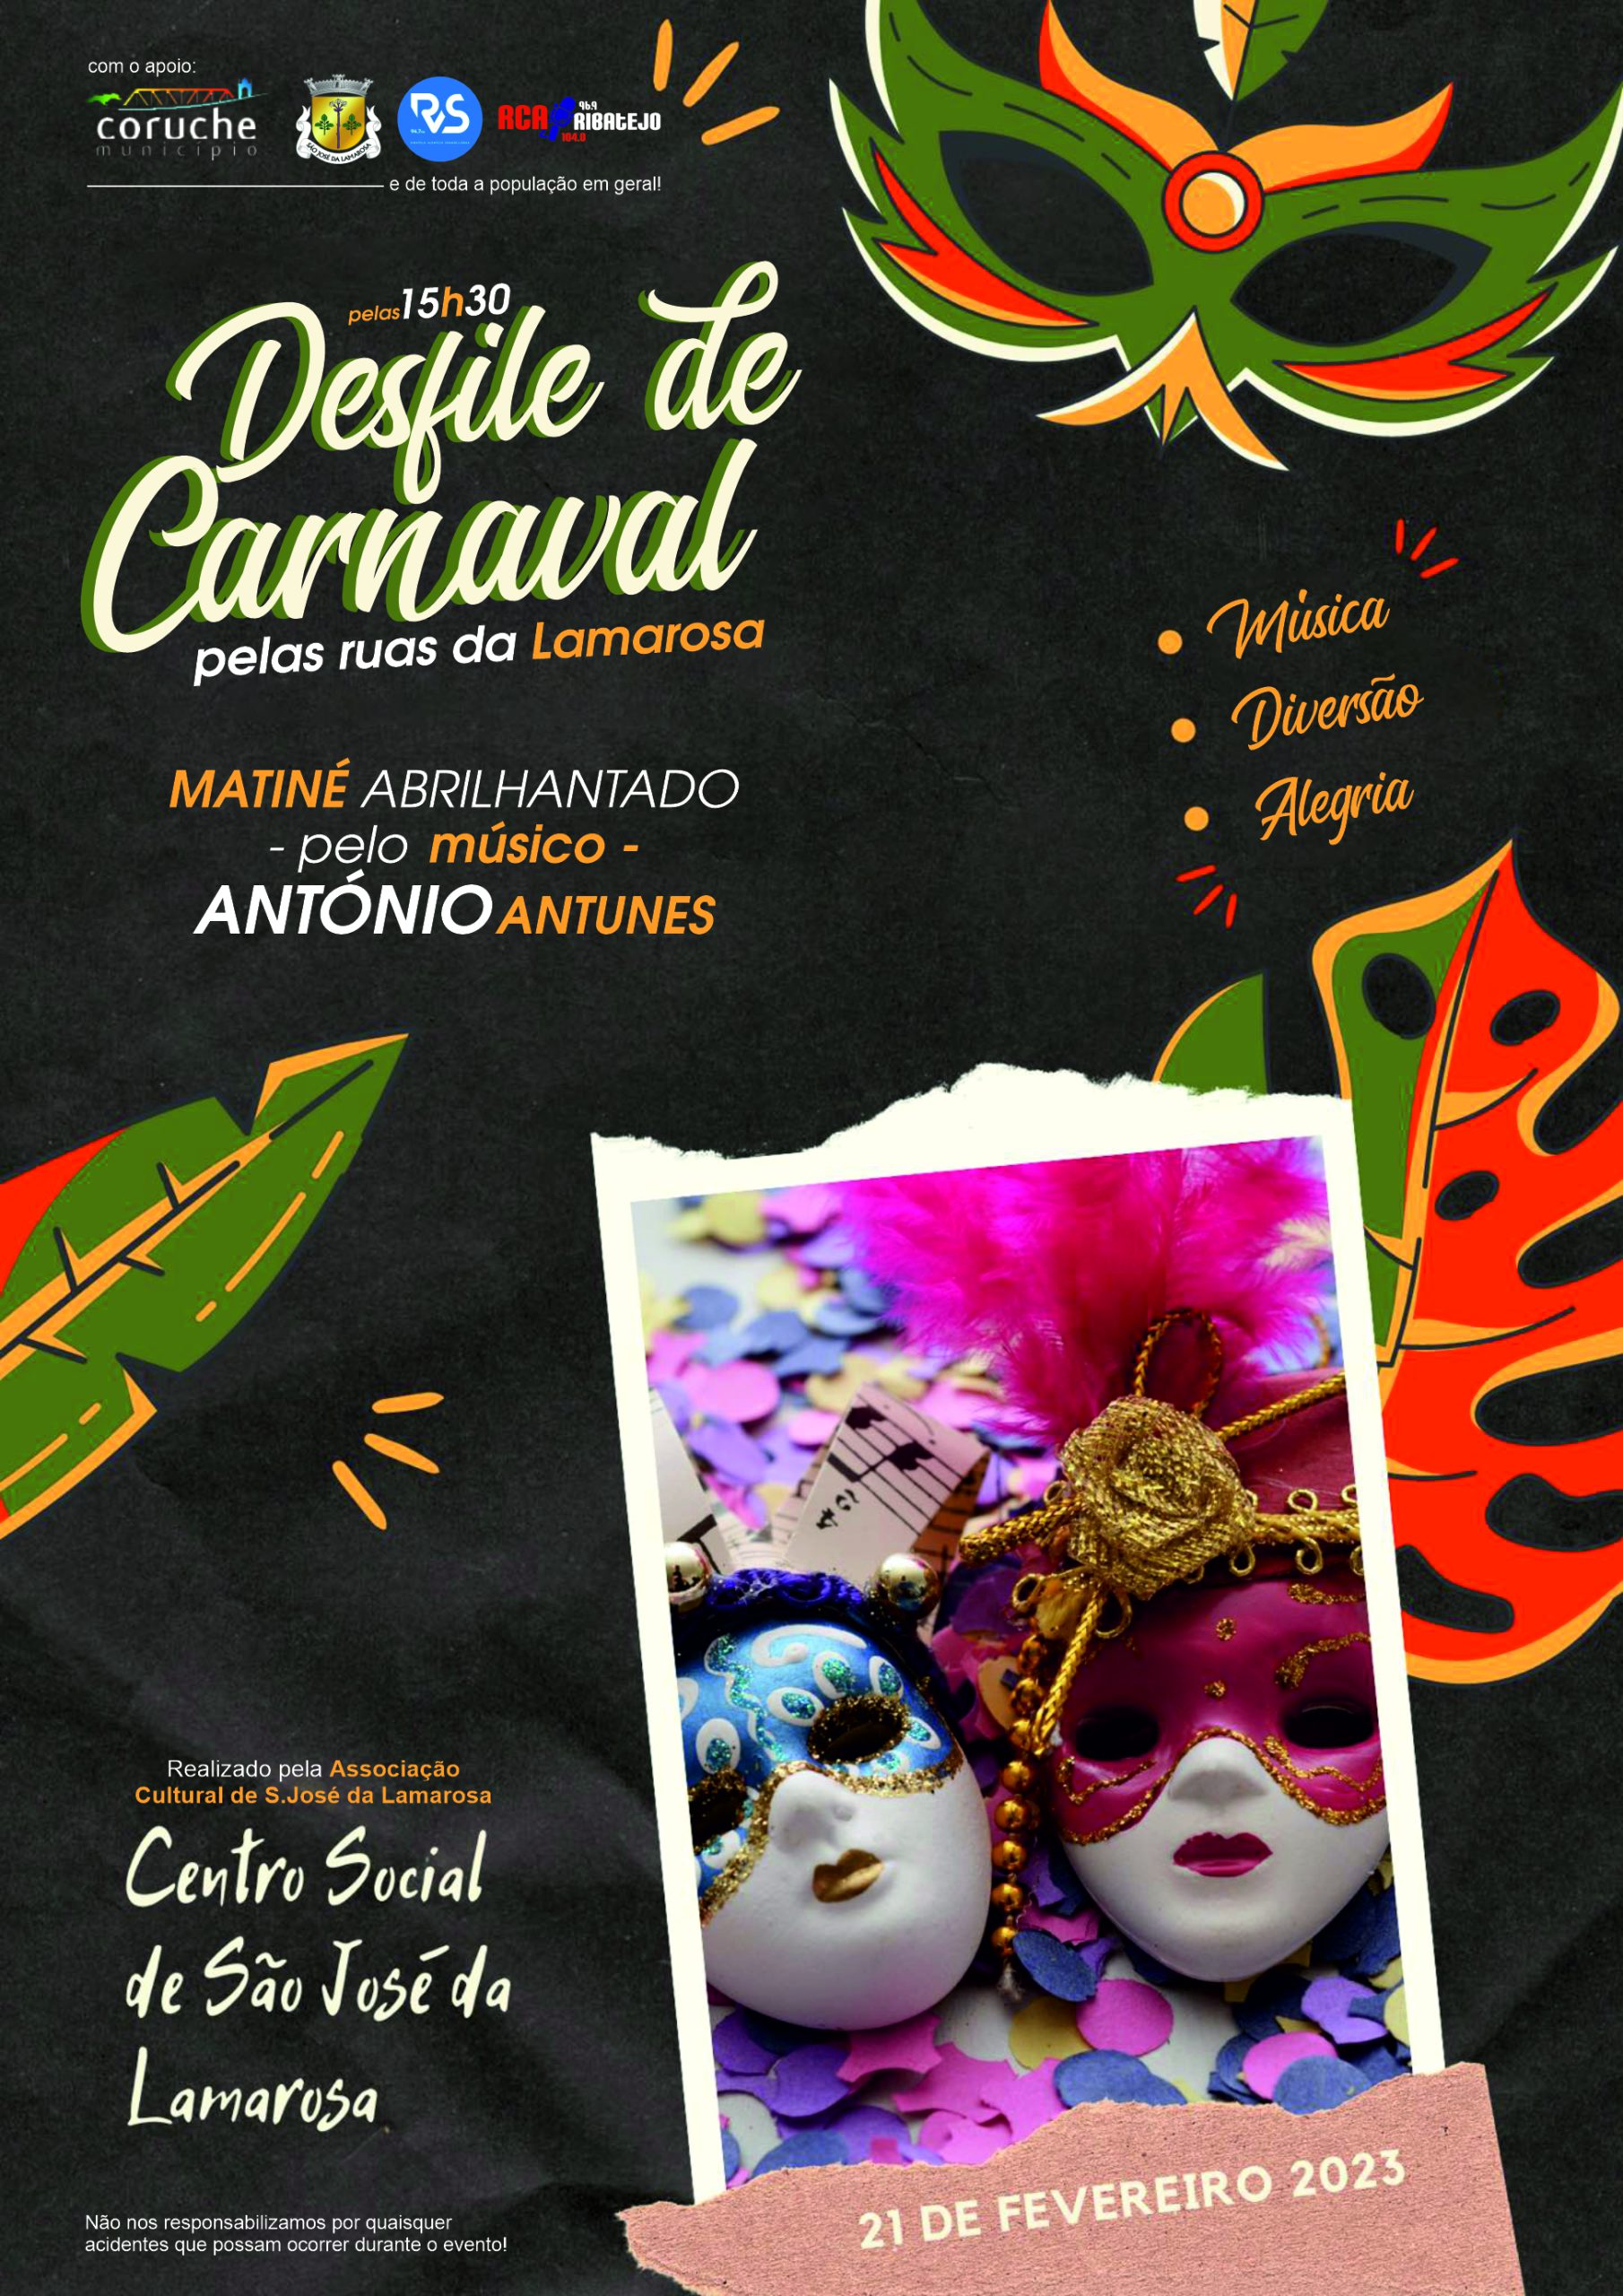 Desfile de Carnaval – dia 21 de fevereiro, pelas 15h30